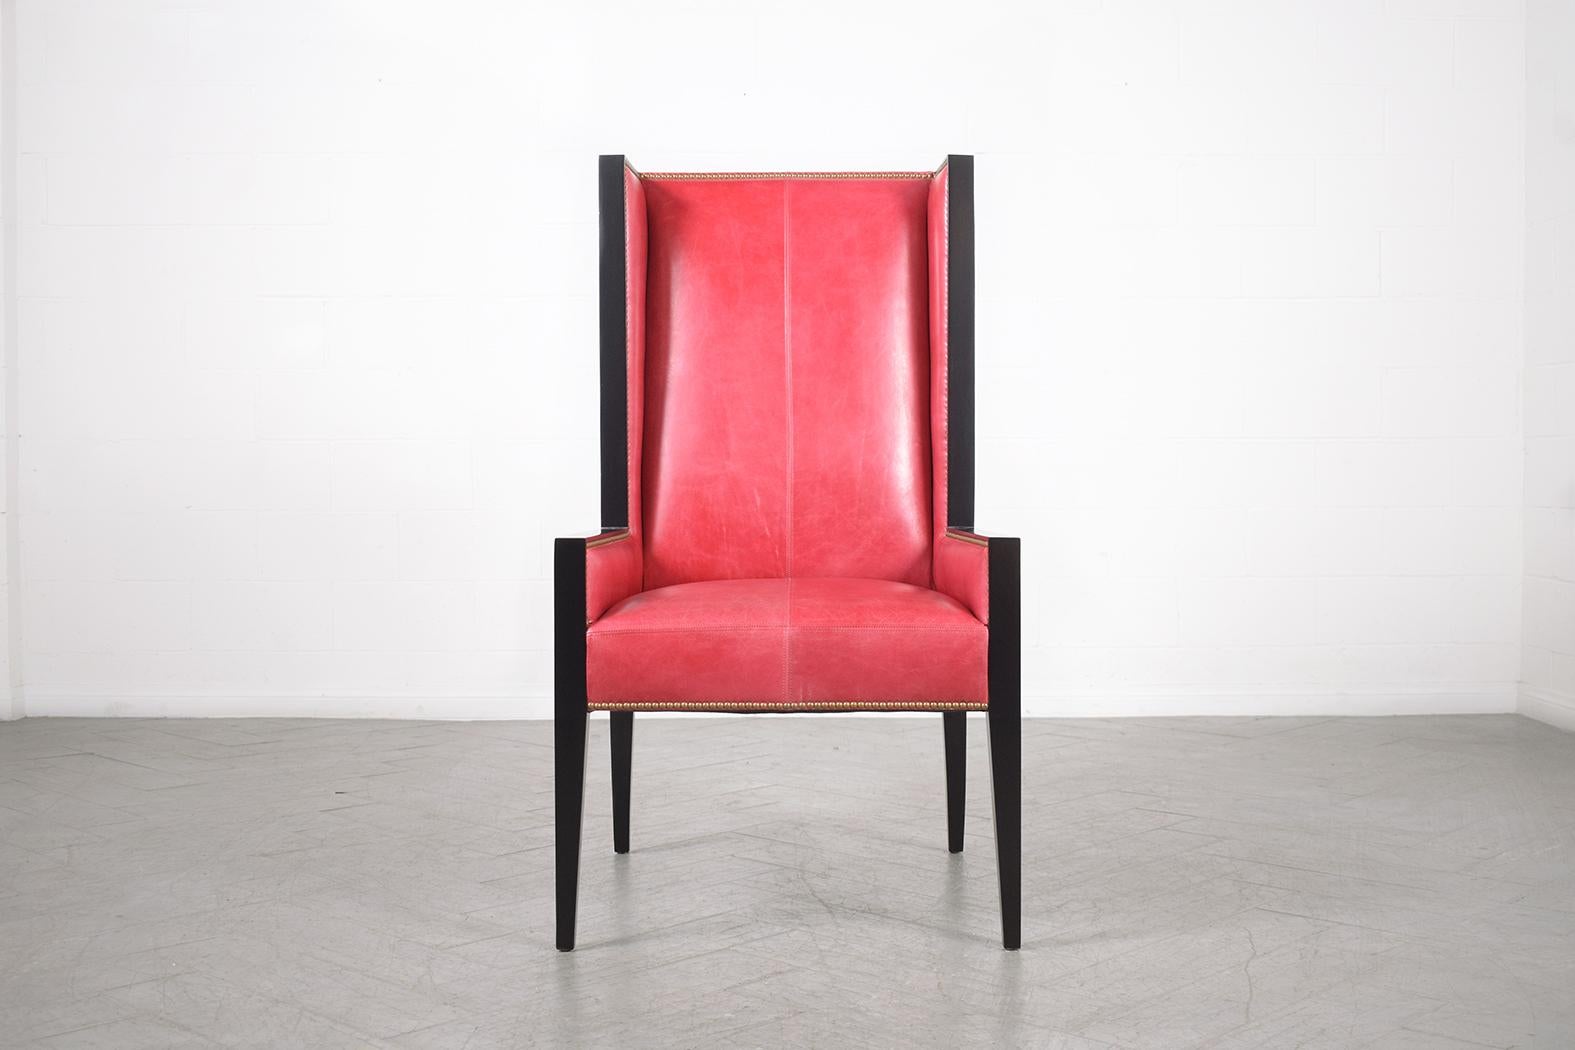 Erleben Sie die zeitlose Eleganz unseres Vintage Modern Lounge Chair, der von unserem hauseigenen Handwerkerteam sorgfältig restauriert und bearbeitet wurde. Dieser elegante Sessel aus einer Kombination aus Massivholz und Leder verfügt über eine